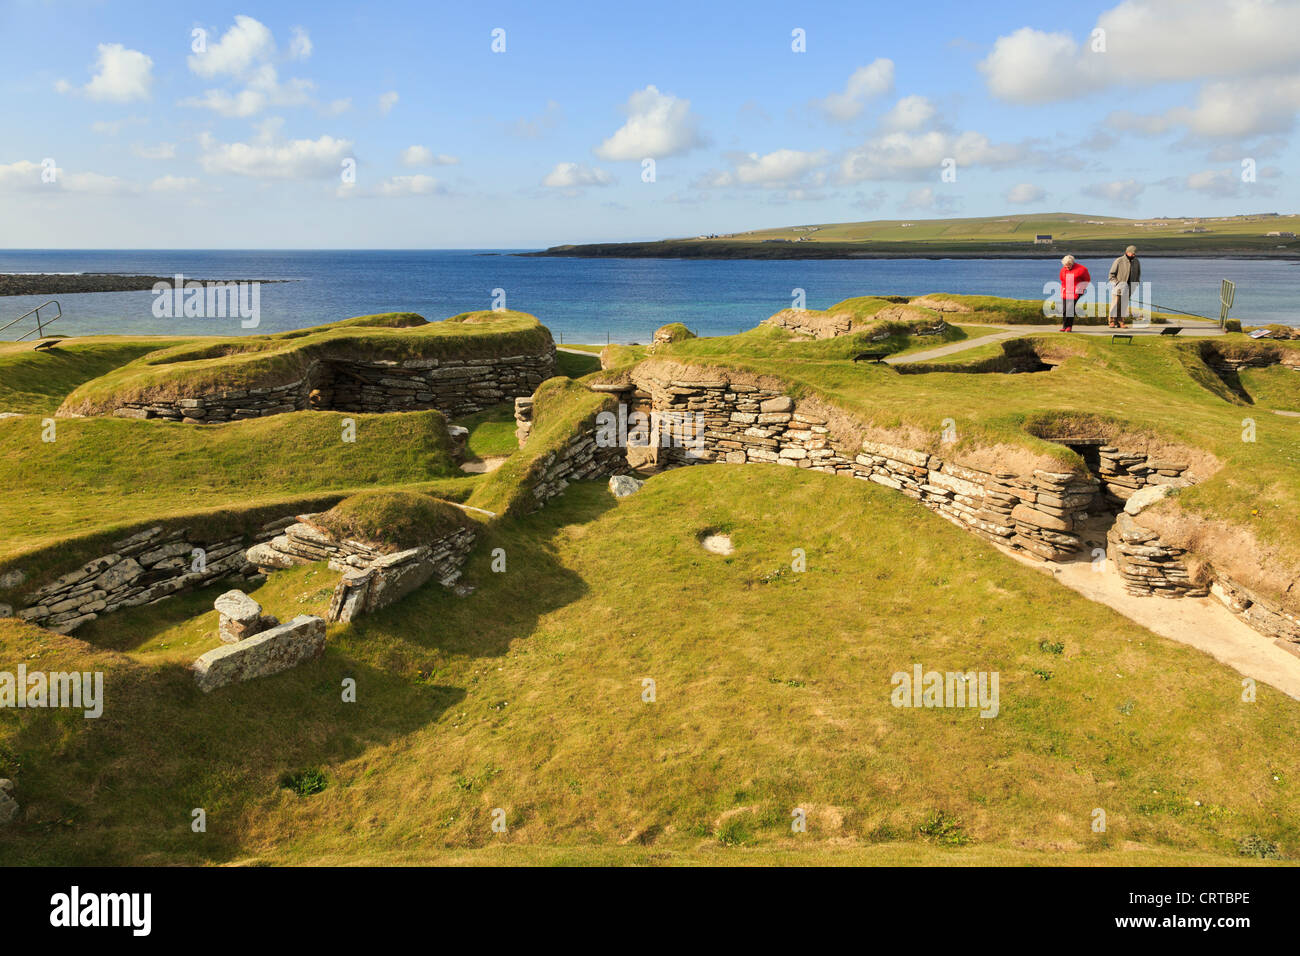 Les excavations d'anciennes maisons de village néolithique préhistorique à Skara Brae par baie de Skaill Orkney Islands Scotland UK Banque D'Images